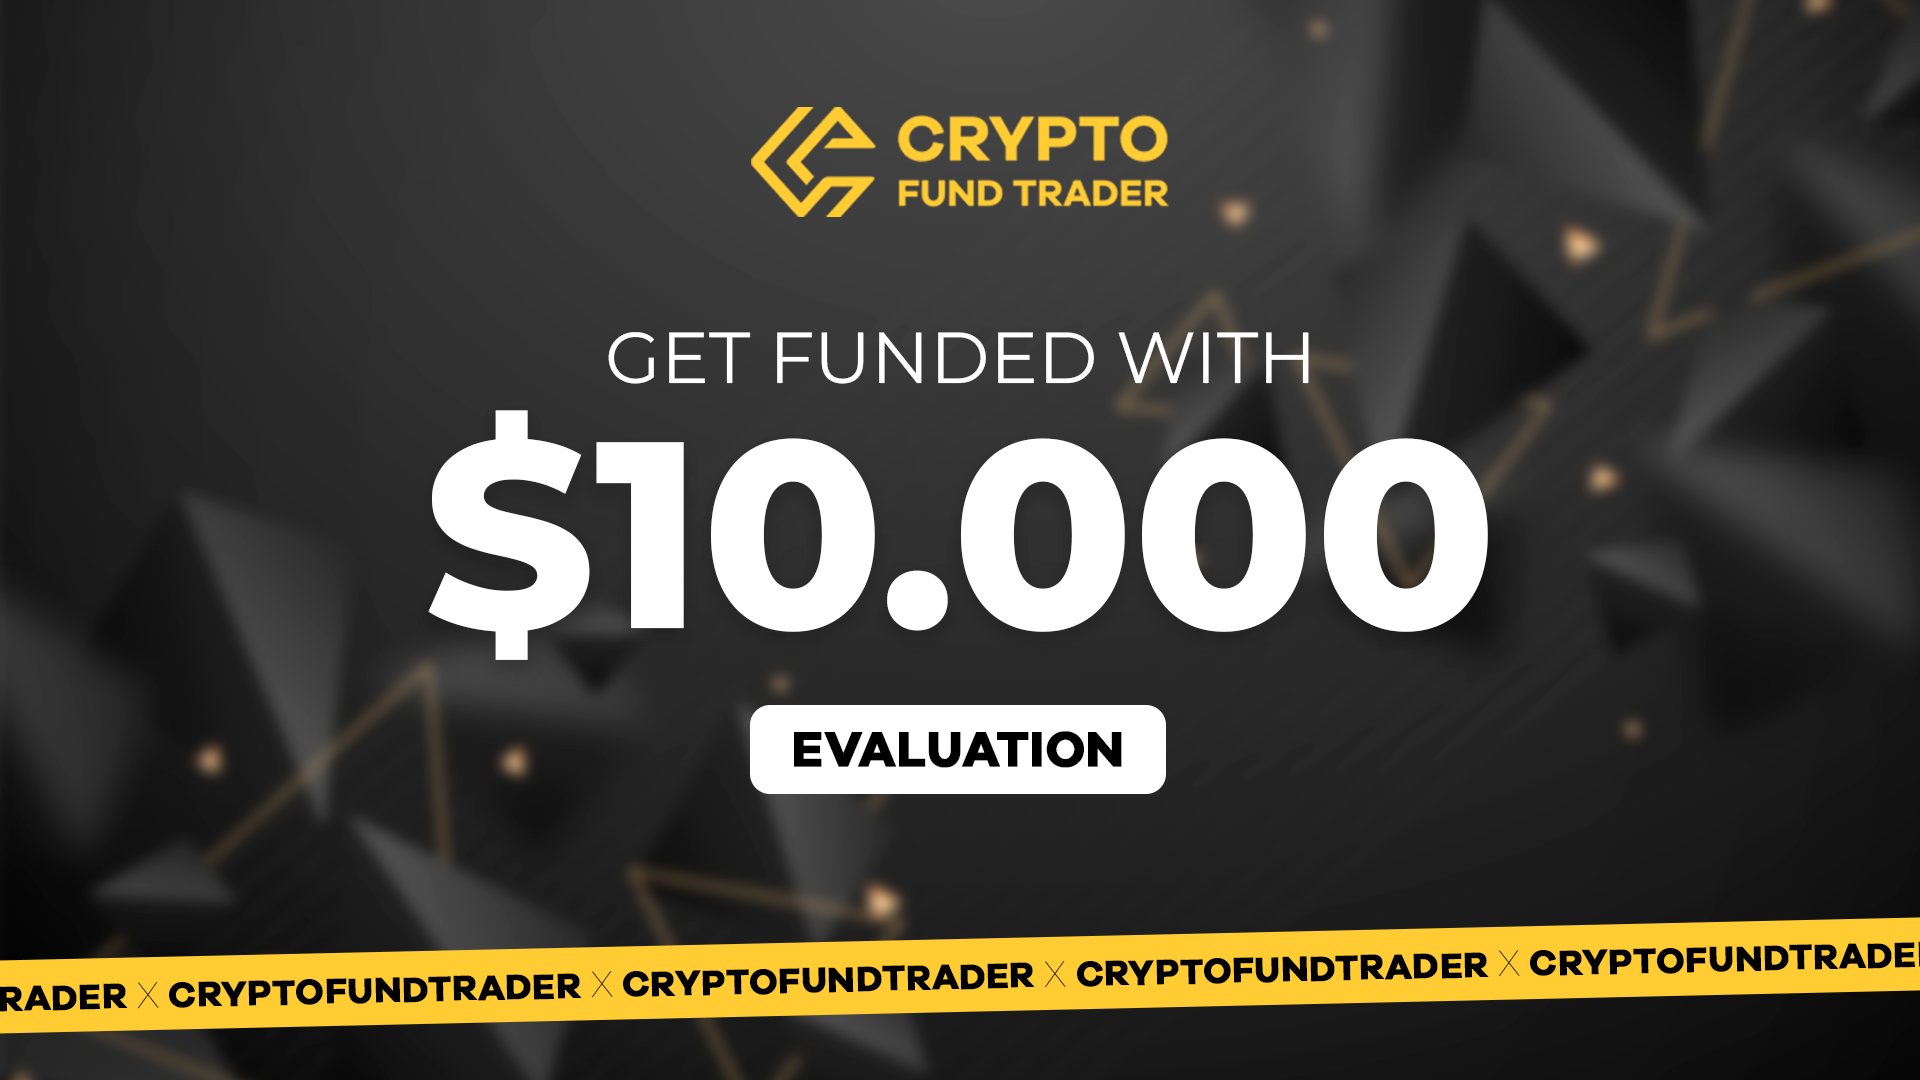 (96.05$) Crypto Fund Trader - $10.000 Evaluation Voucher